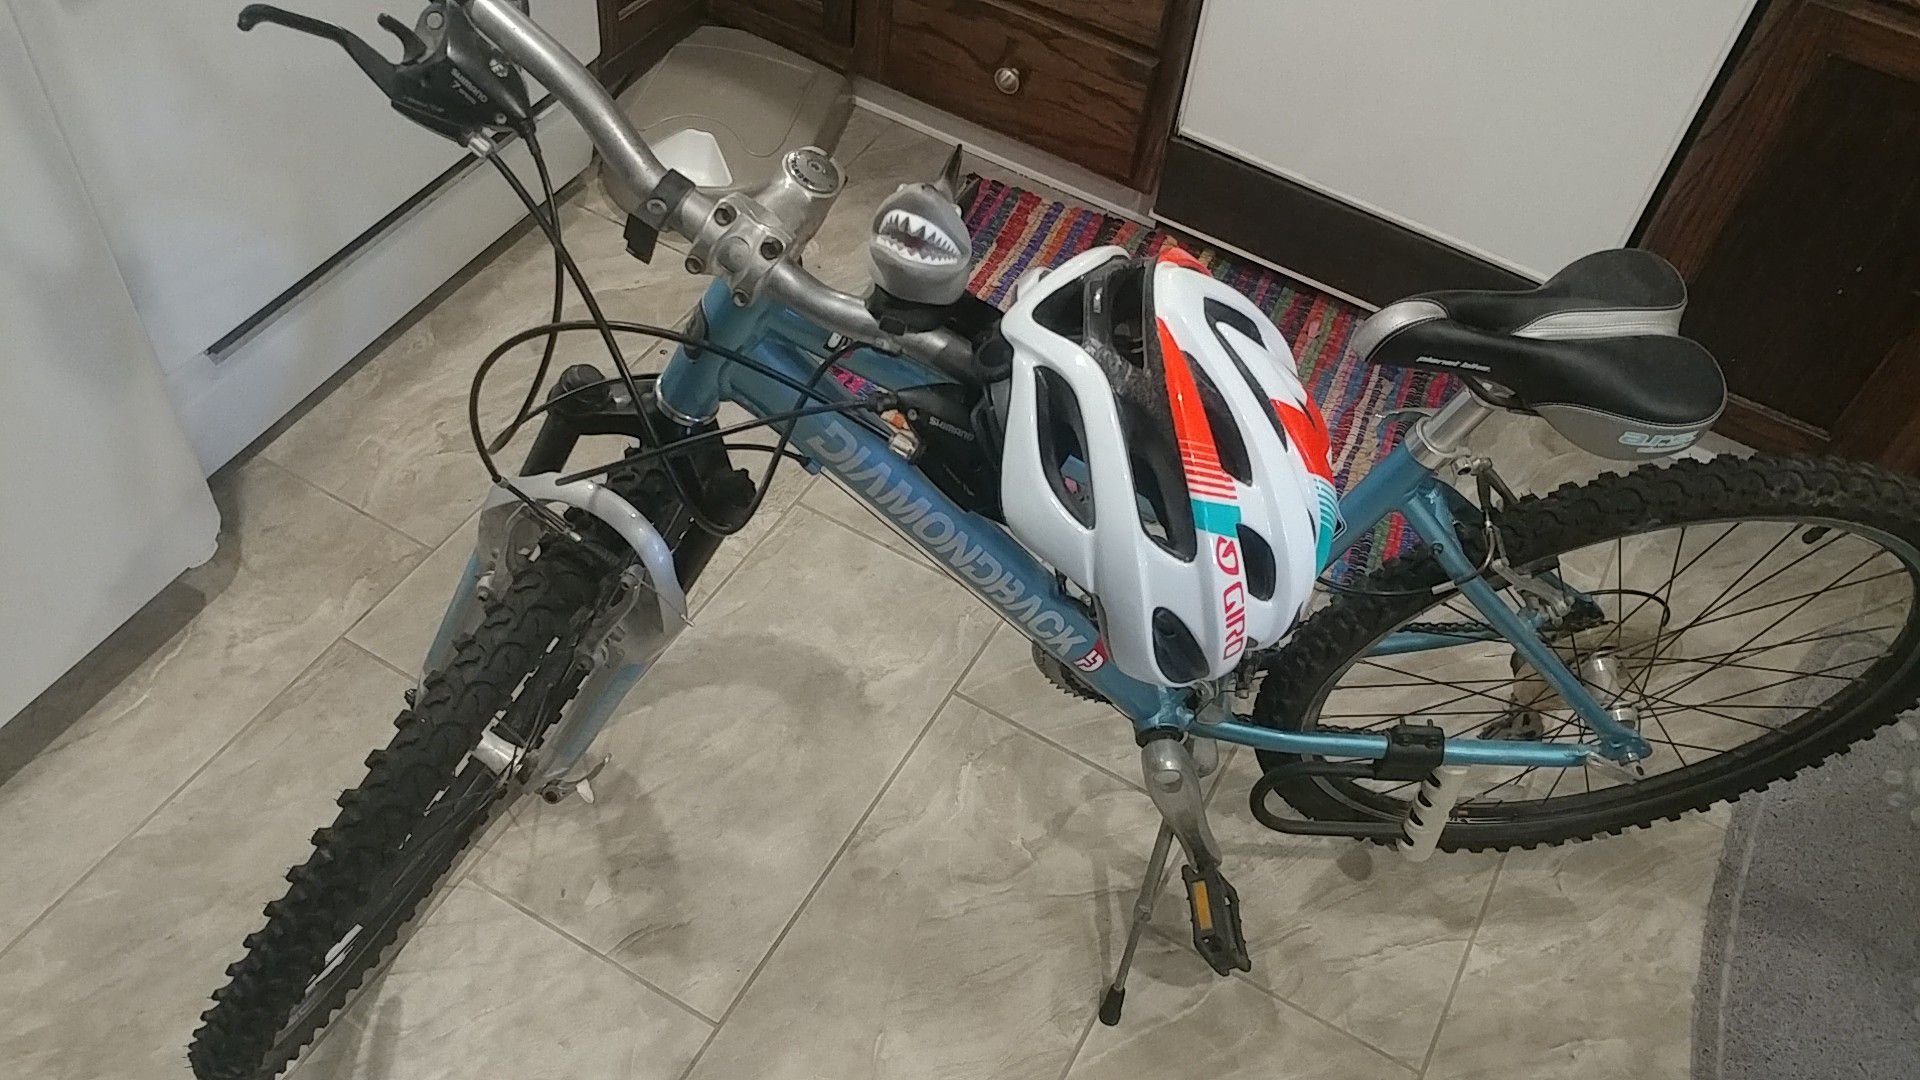 Diamondback Sorrento bike for sale $210